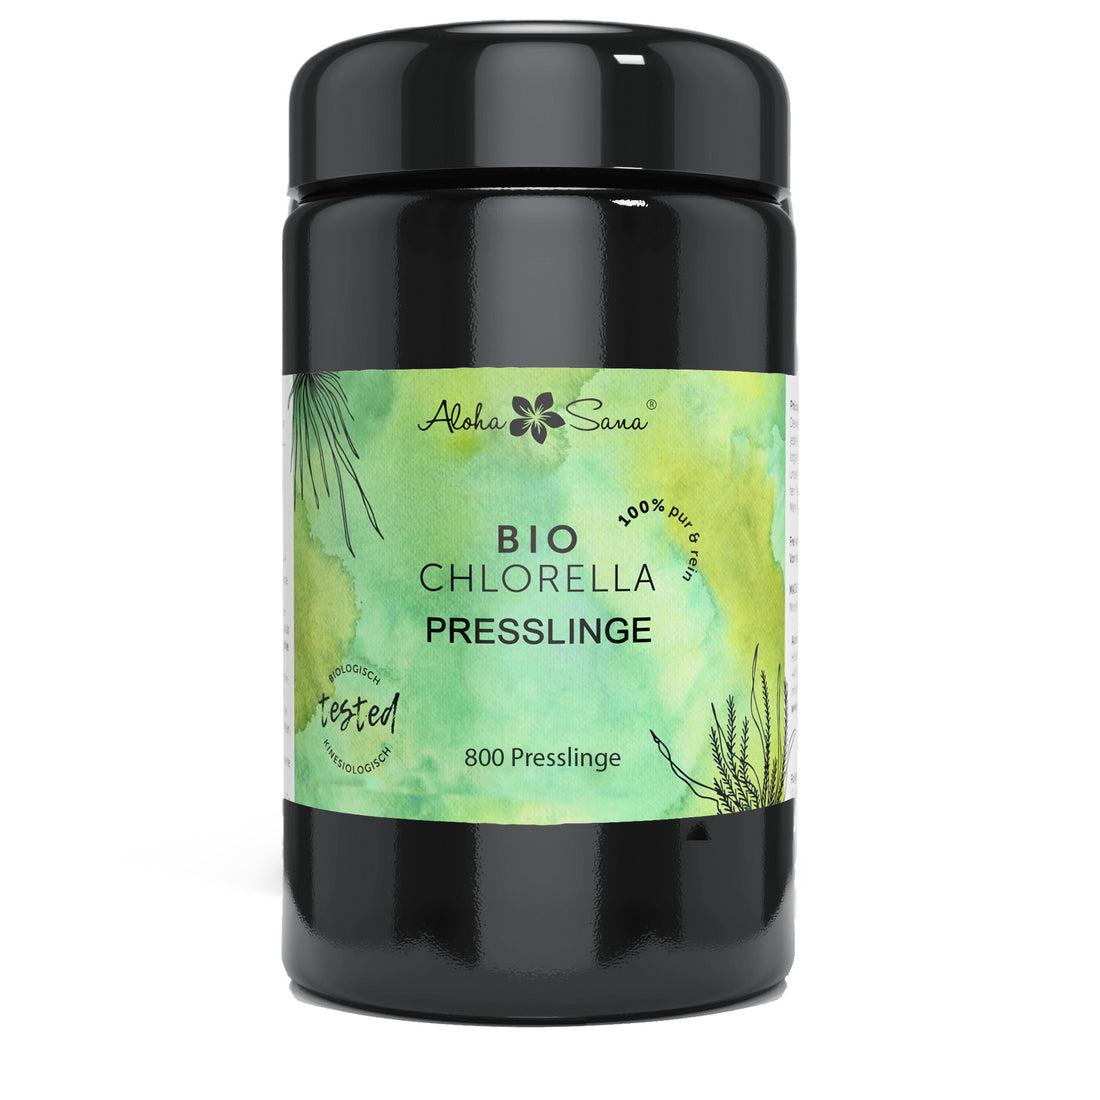 Bio Chlorella Algen 800 Presslinge